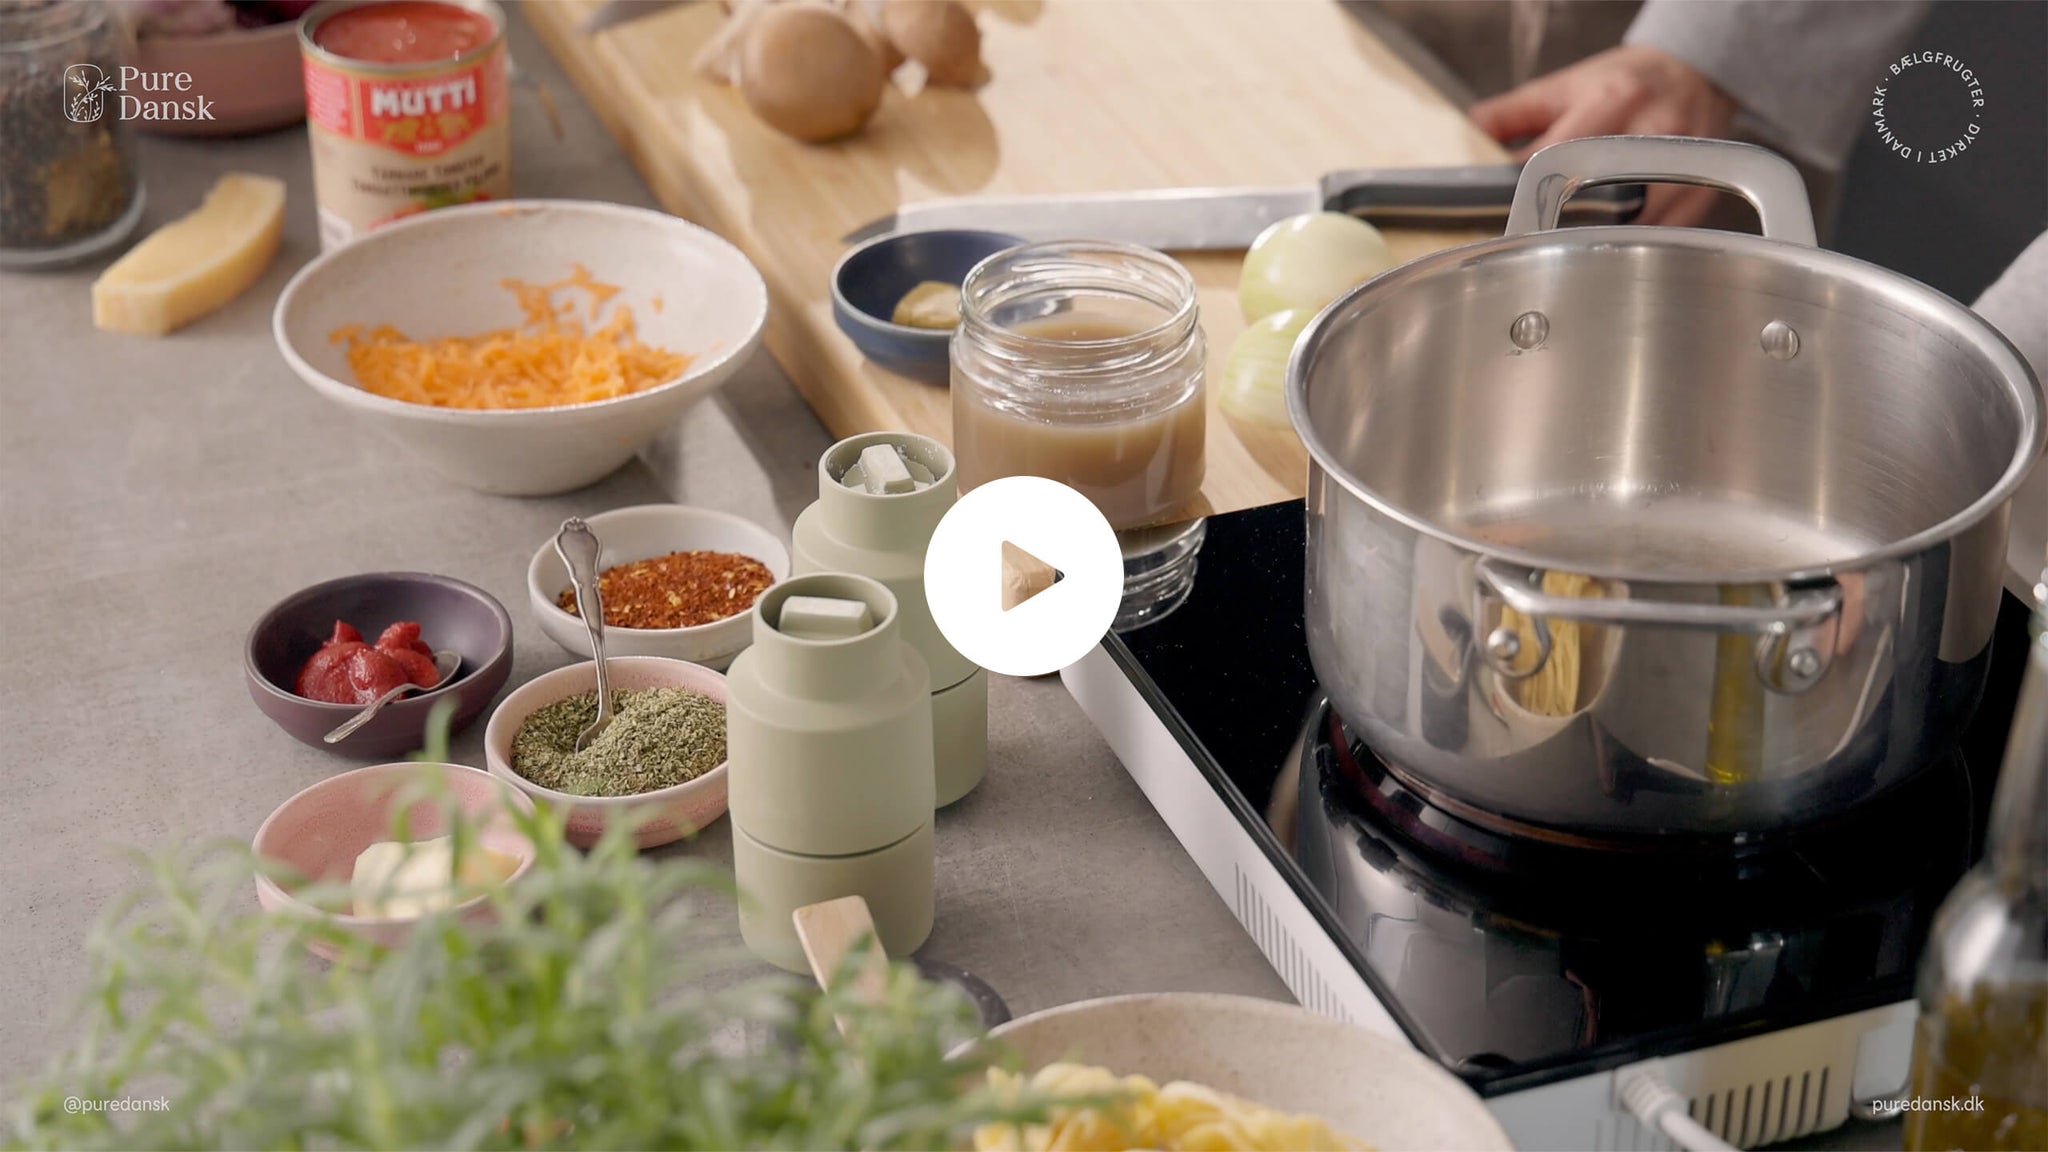 Kom med i køkkenet: Lær at lave den lækreste bolognese